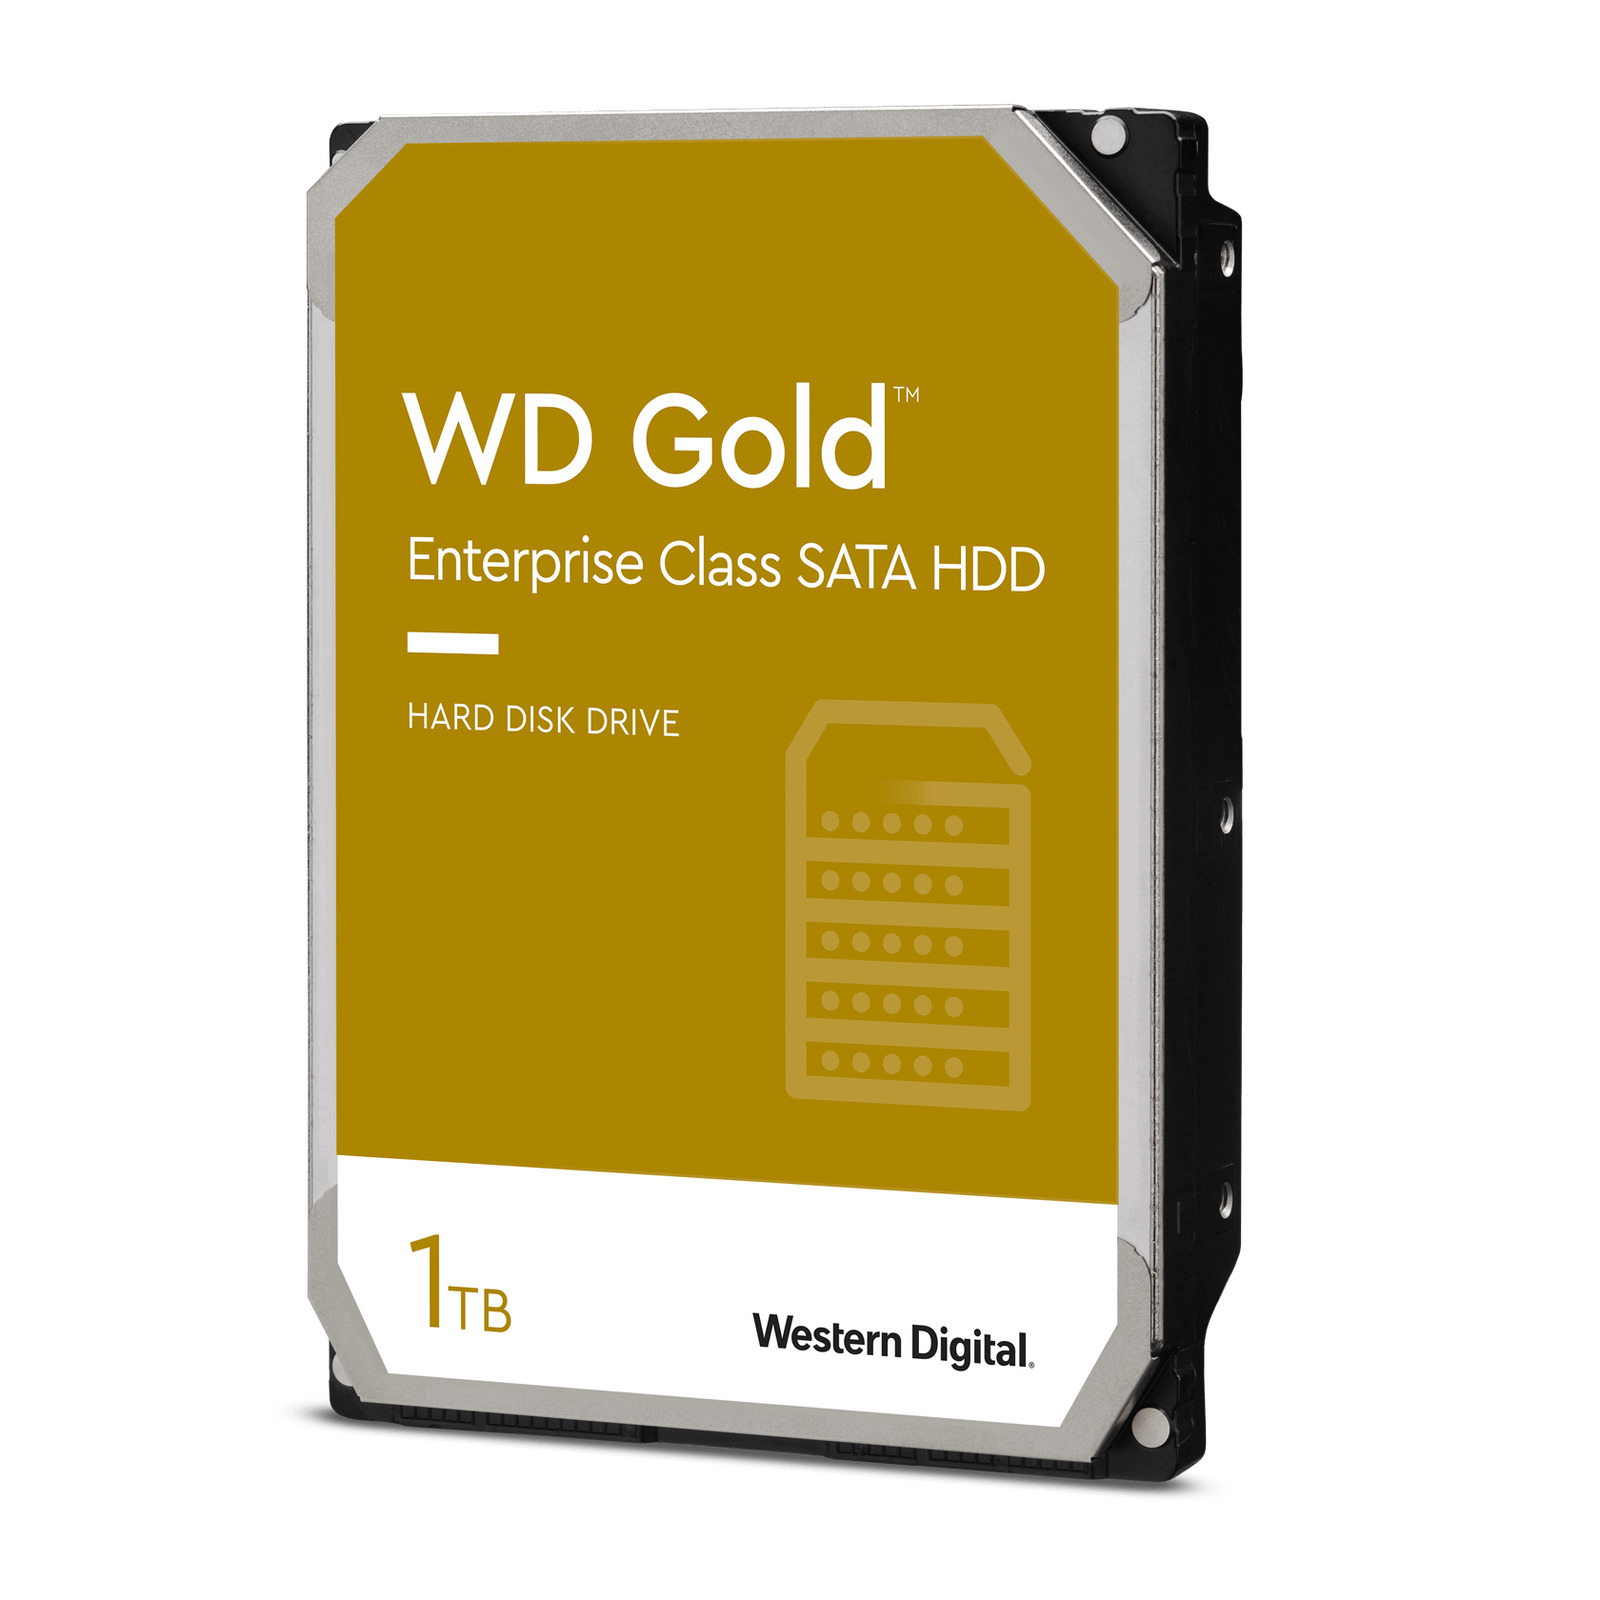 Western Digital 1TB WD Gold Enterprise Class SATA Internal HDD - WD1005FBYZ